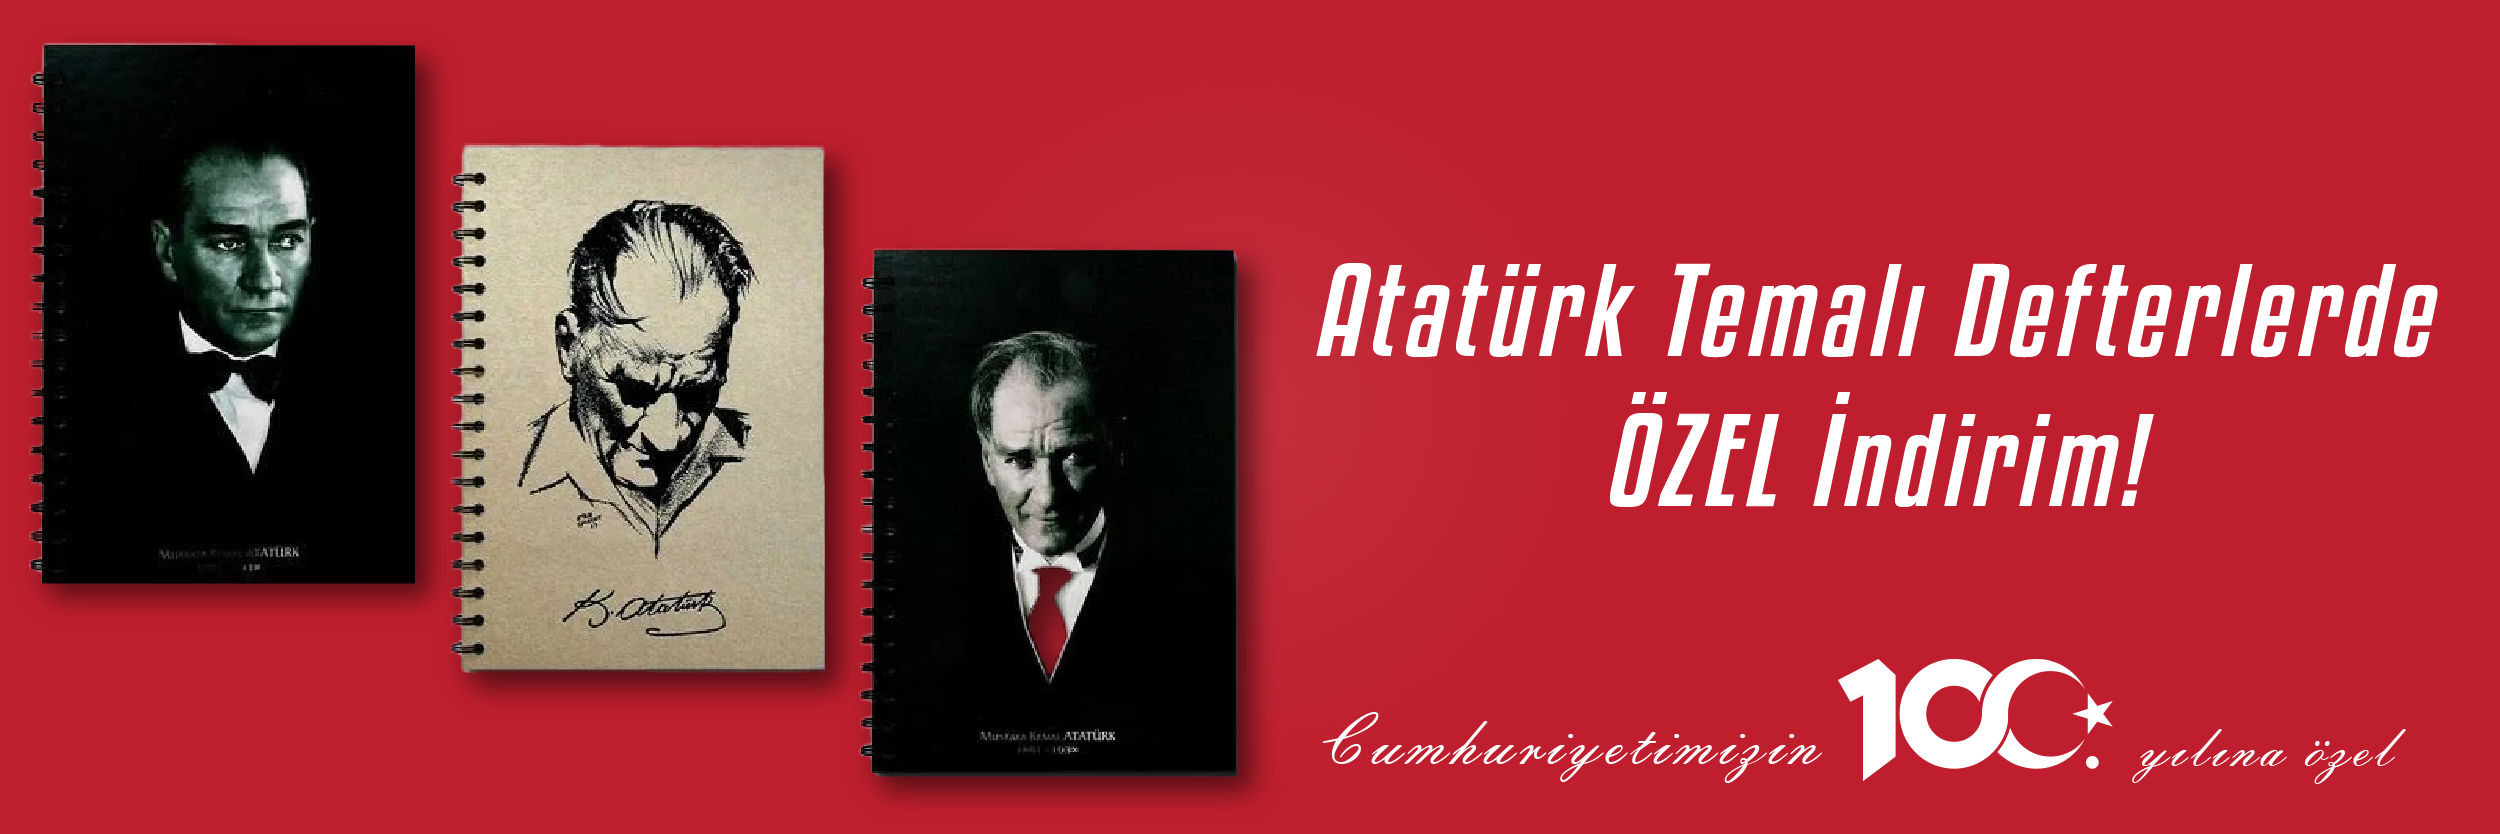 Atatürk Defterleri